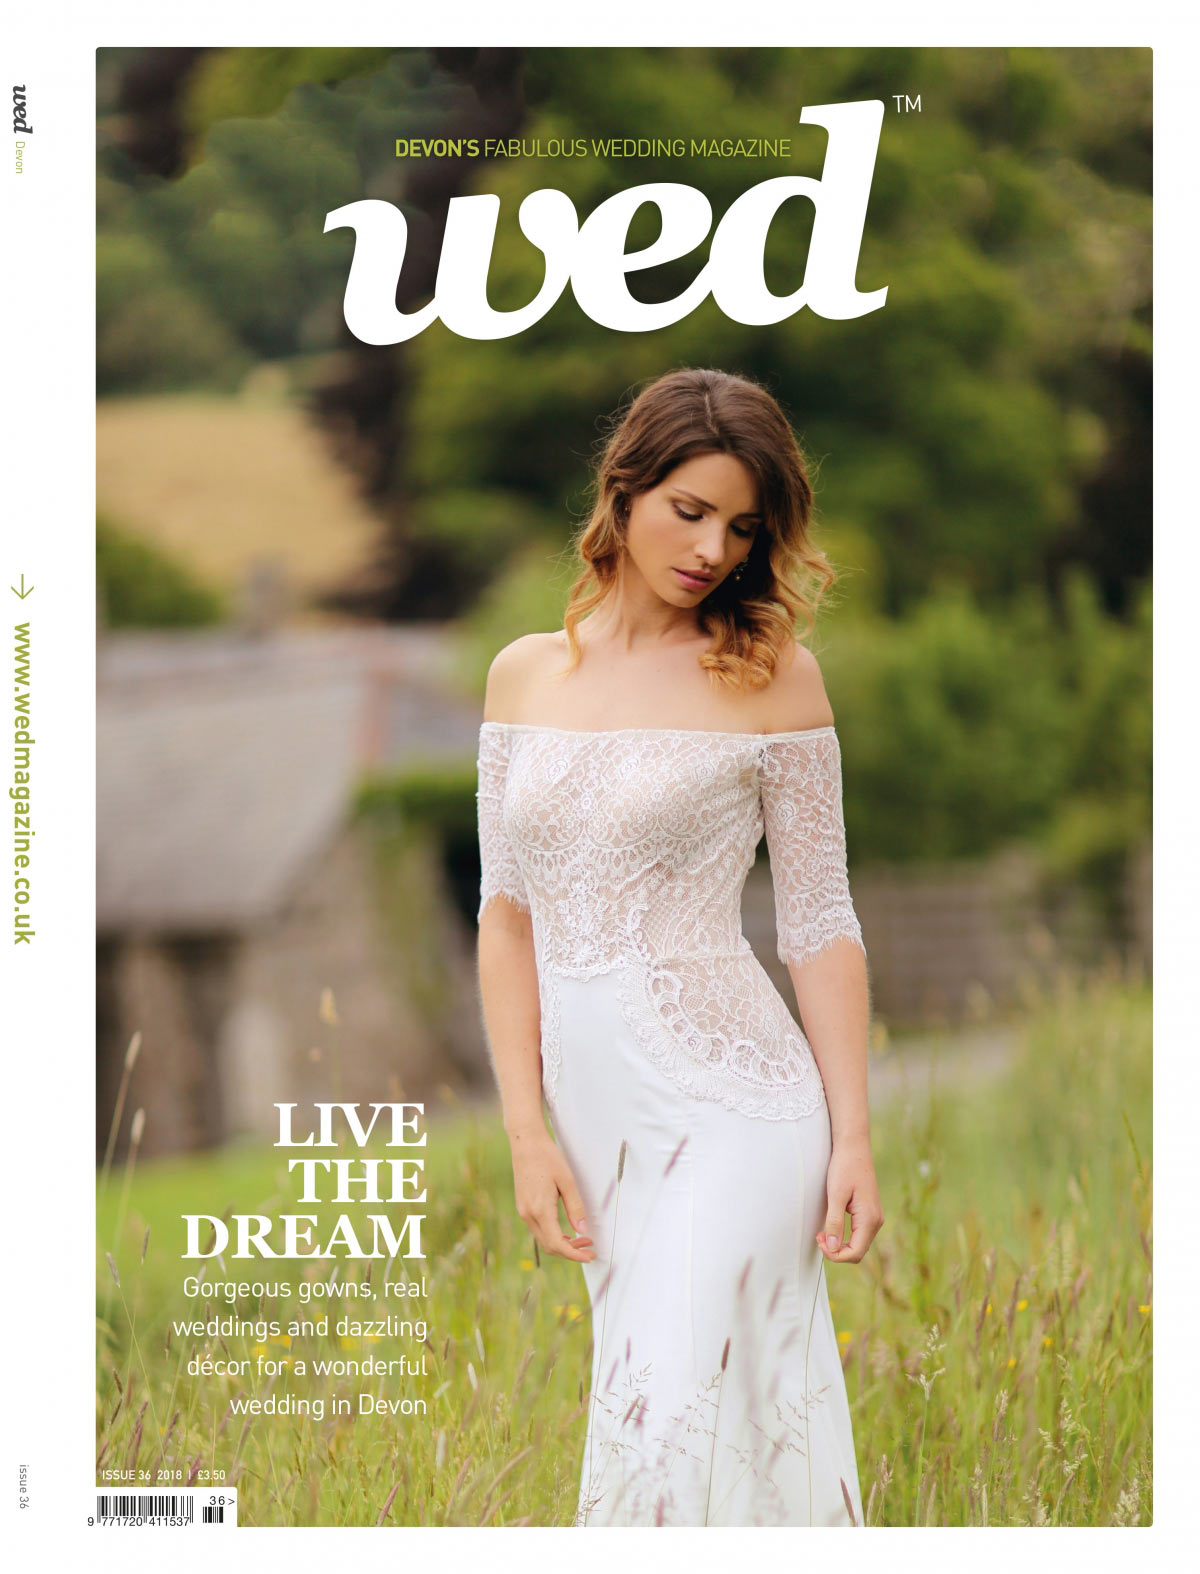 Devon Wed Magazine - Issue 36